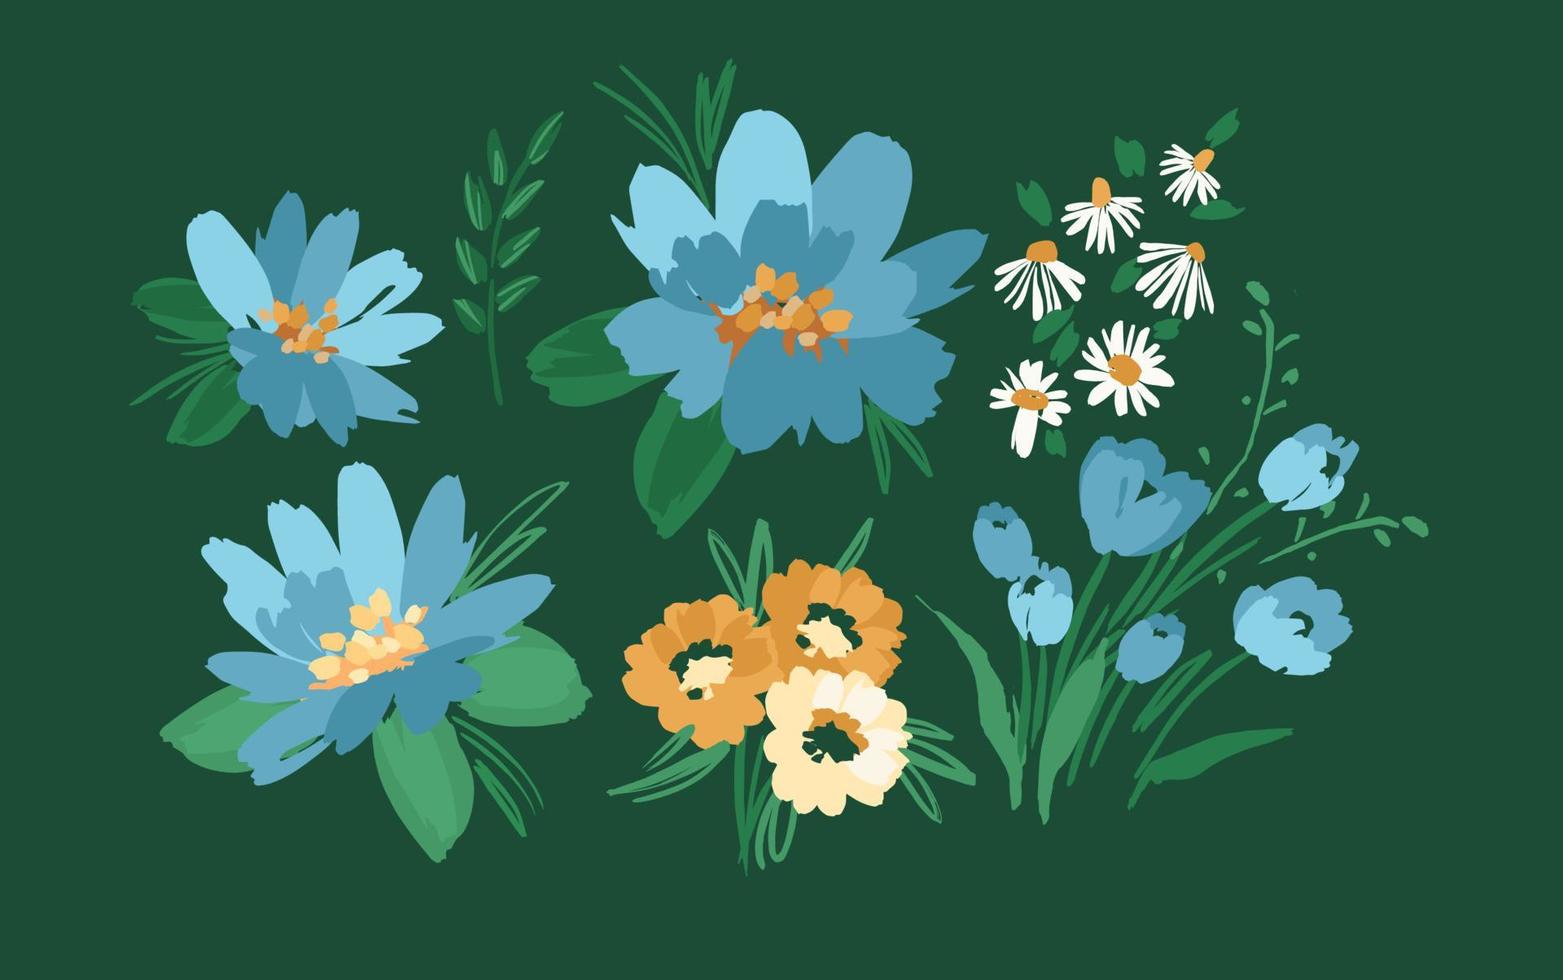 conjunto de elementos de diseño floral. hojas, flores, hierba, ramas ilustración vectorial vector